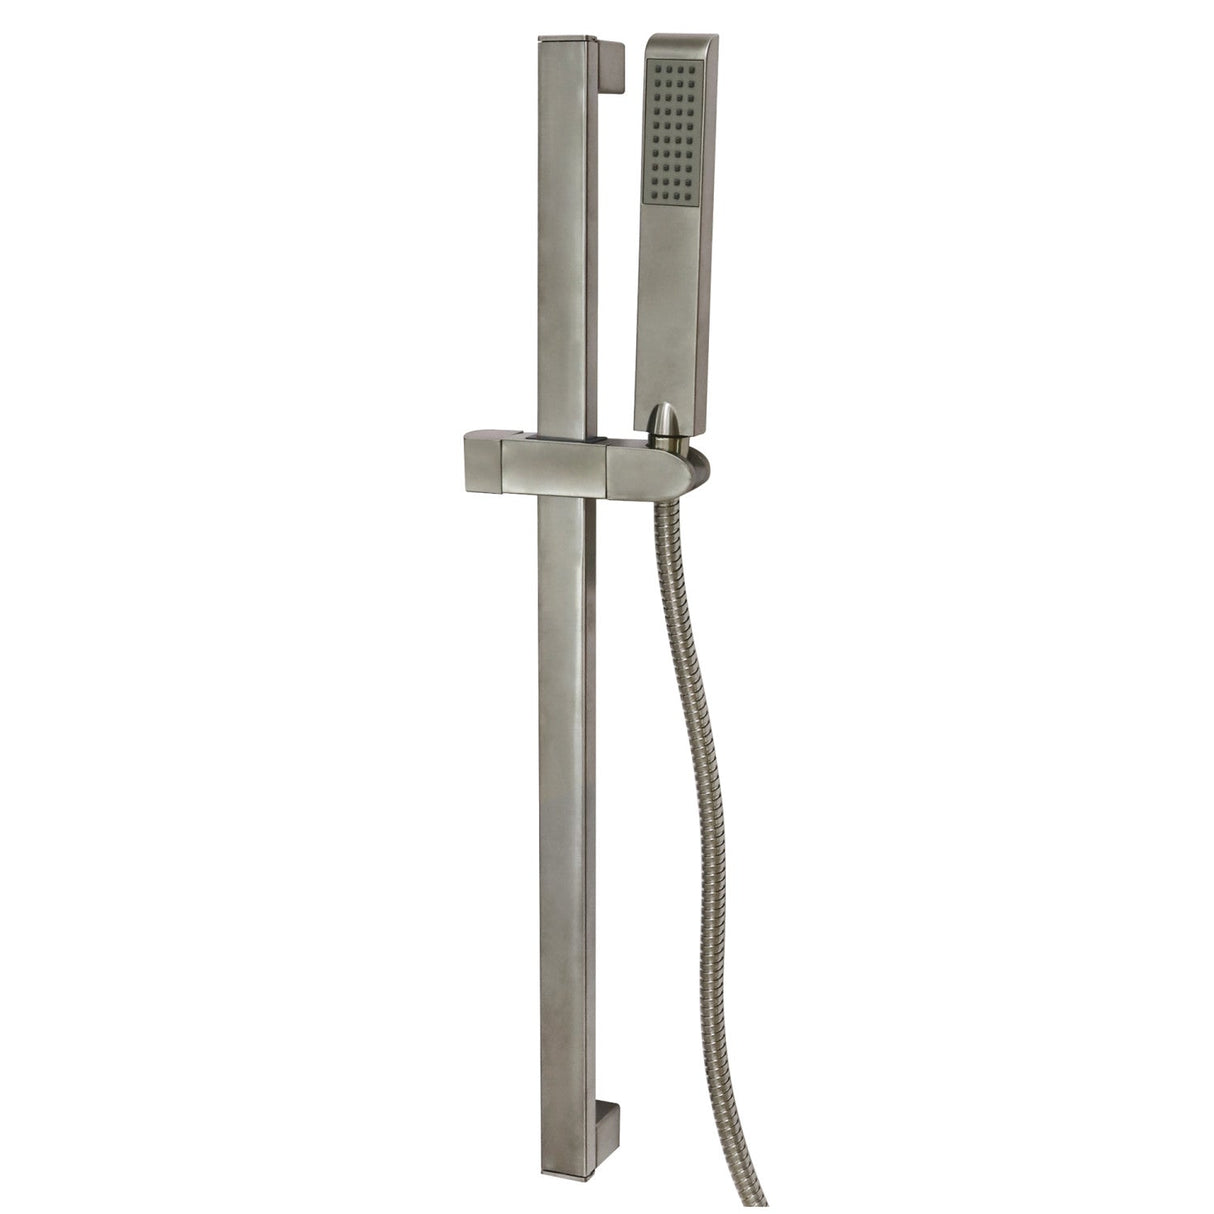 Modern KX2548 24-Inch Shower Slide Bar with Hand Shower and Holder, Brushed Nickel